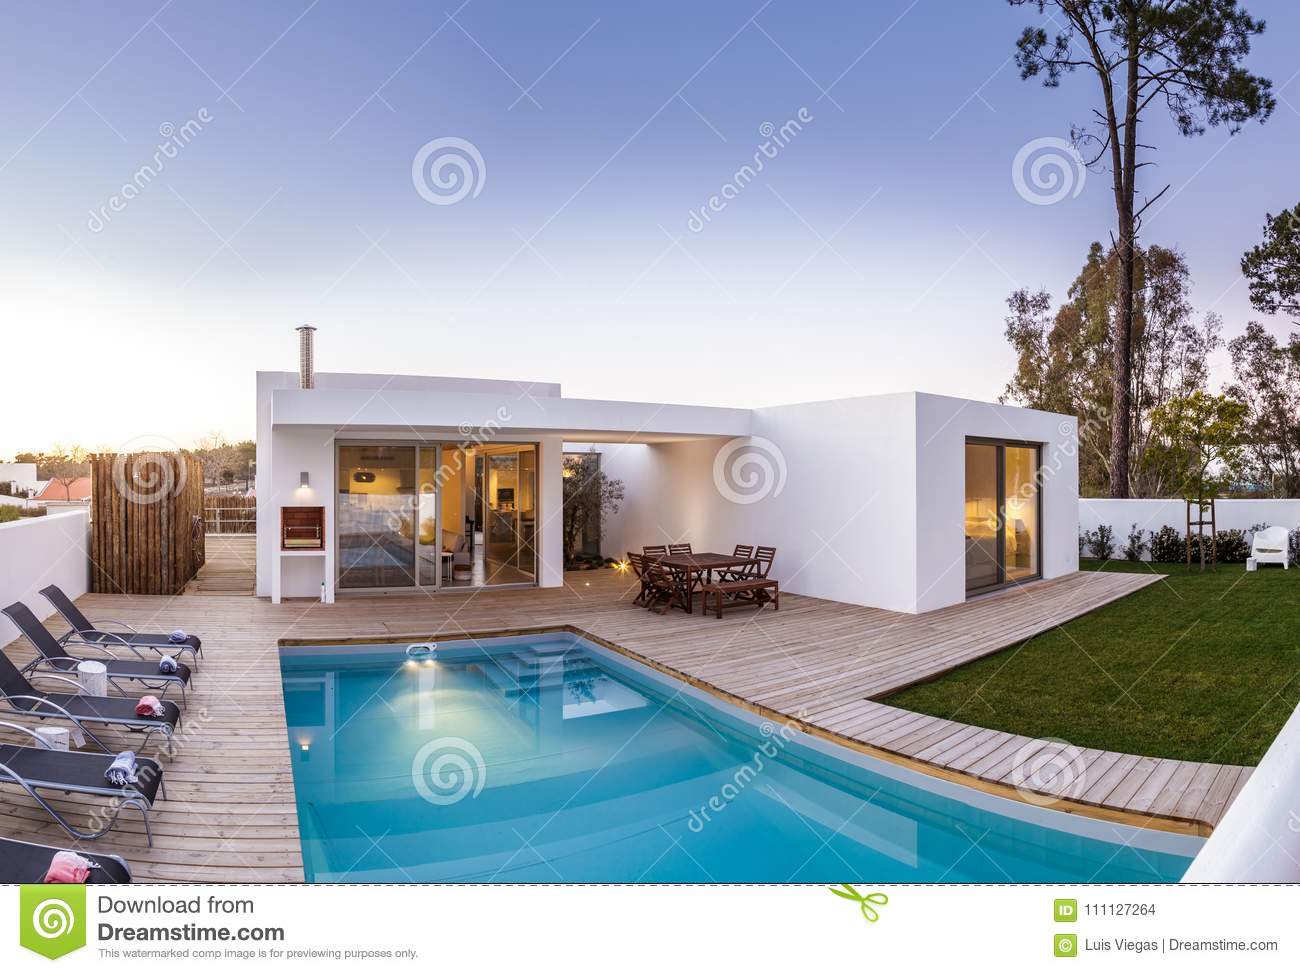 casas modernas con piscina y jardin - Maldonado's Landscape LLC